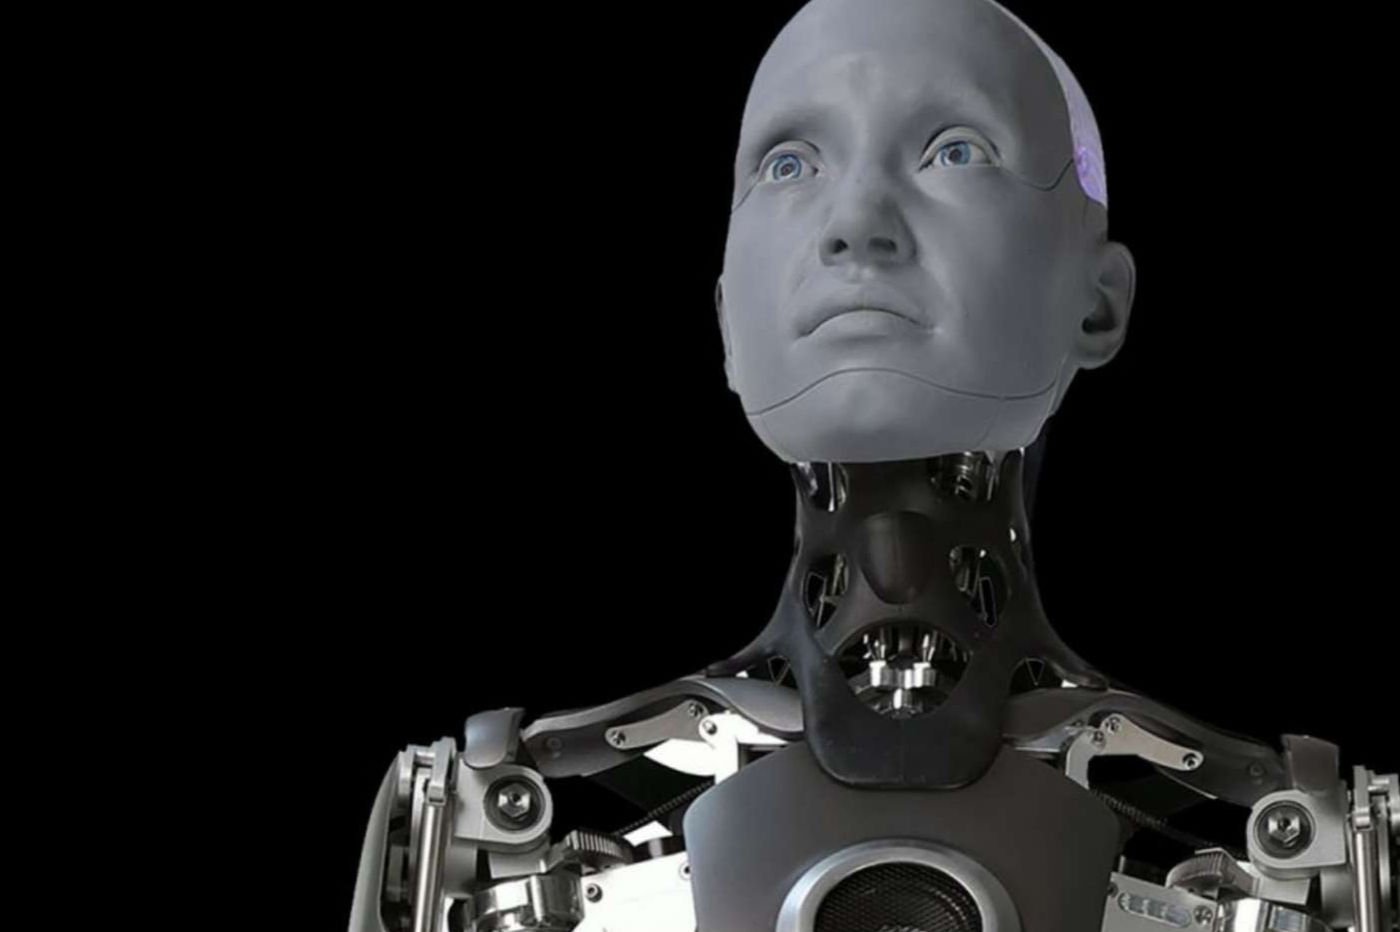 Ce robot humanoïde nous ressemble trait pour trait et c’est inquiétant